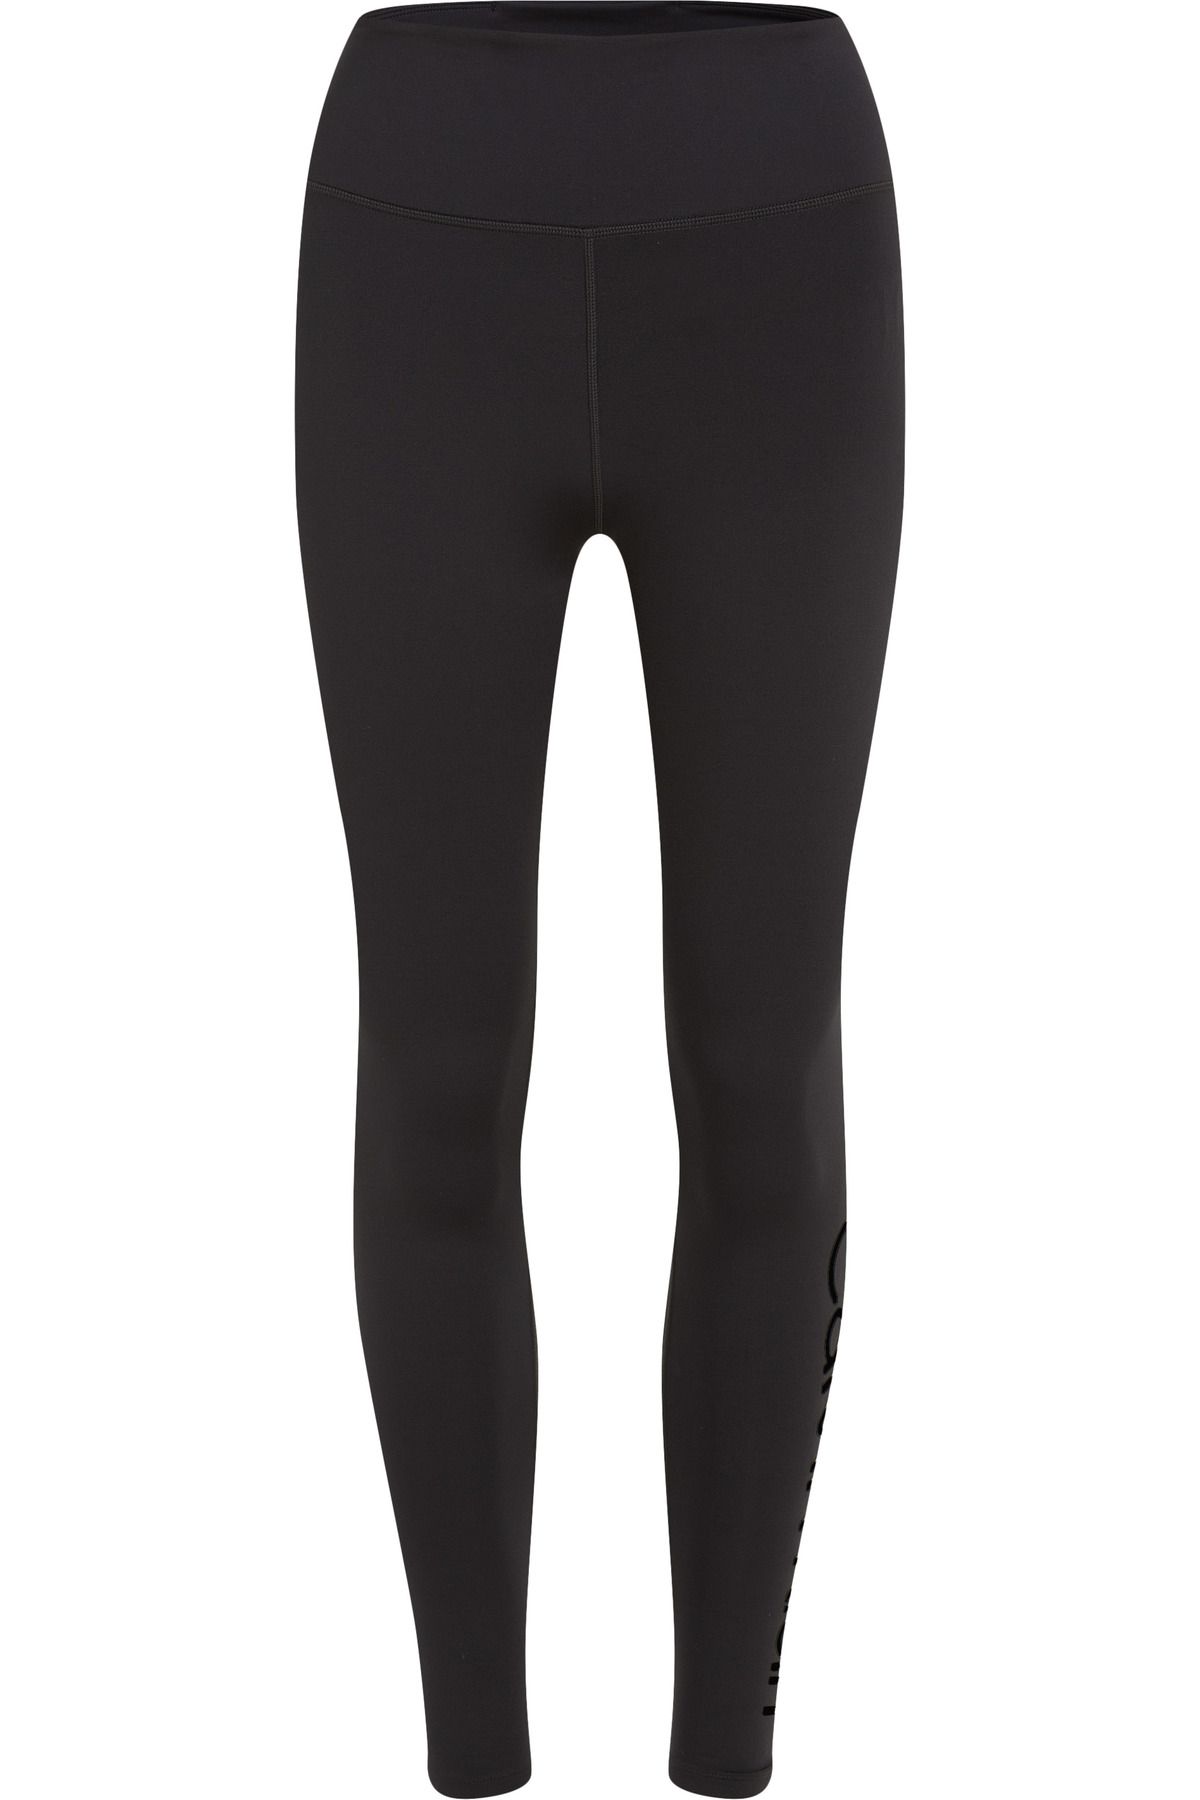 Calvin Klein Kadın Marka Logolu Elastik Bantlı Yüksek Belli Nefes Alabilen Kumaşlı Sportif Görünümlü Siyah Tayt 0